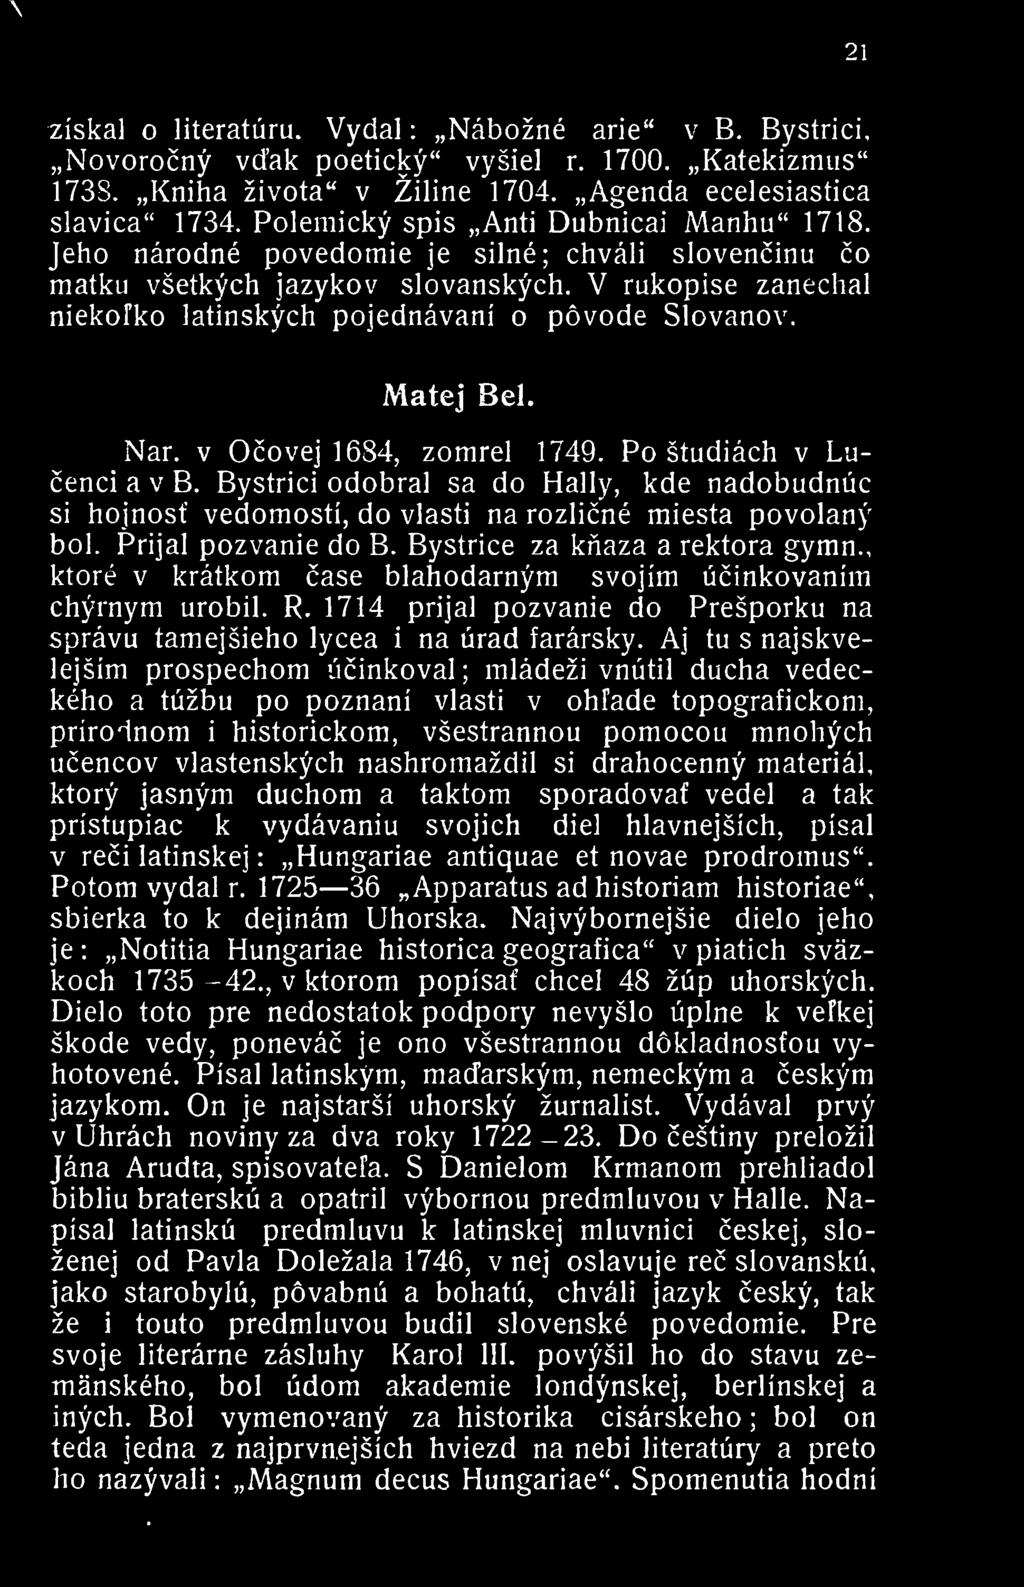 V rukopise zanechai niekofko latinskych pojednavani o povode Slovanov, Matej Bel. Nar. V Ocovej 1684, zomrel 1749. Po studiach v Lucenci a v B.